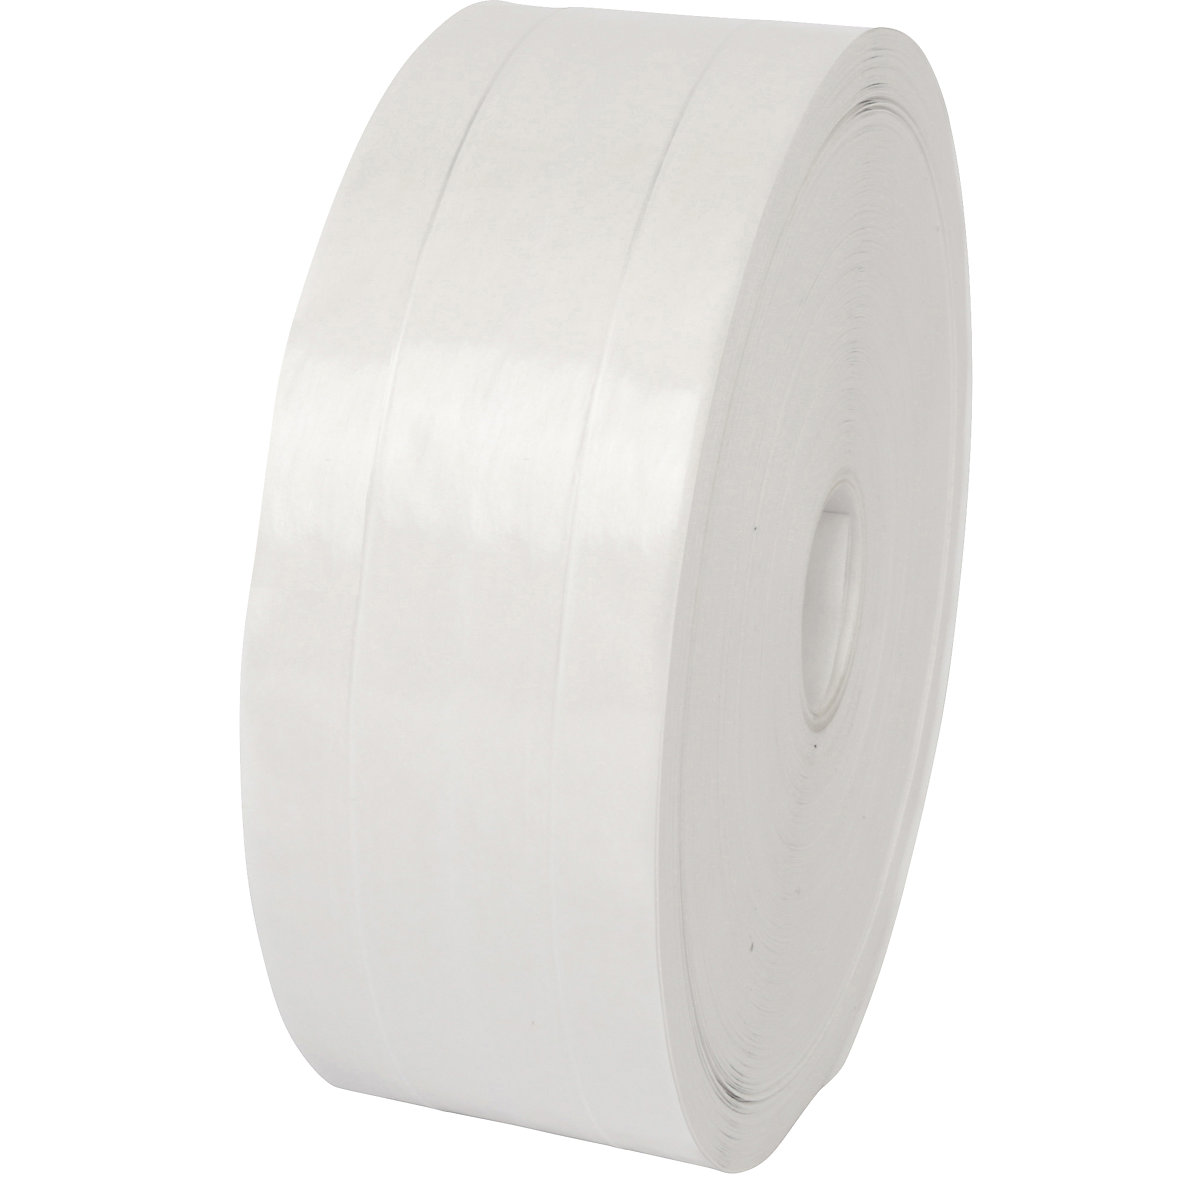 Cinta adhesiva en húmedo, refuerzo de hilo doble, UE 12 rollos, blanco, anchura de cinta 60 mm-1